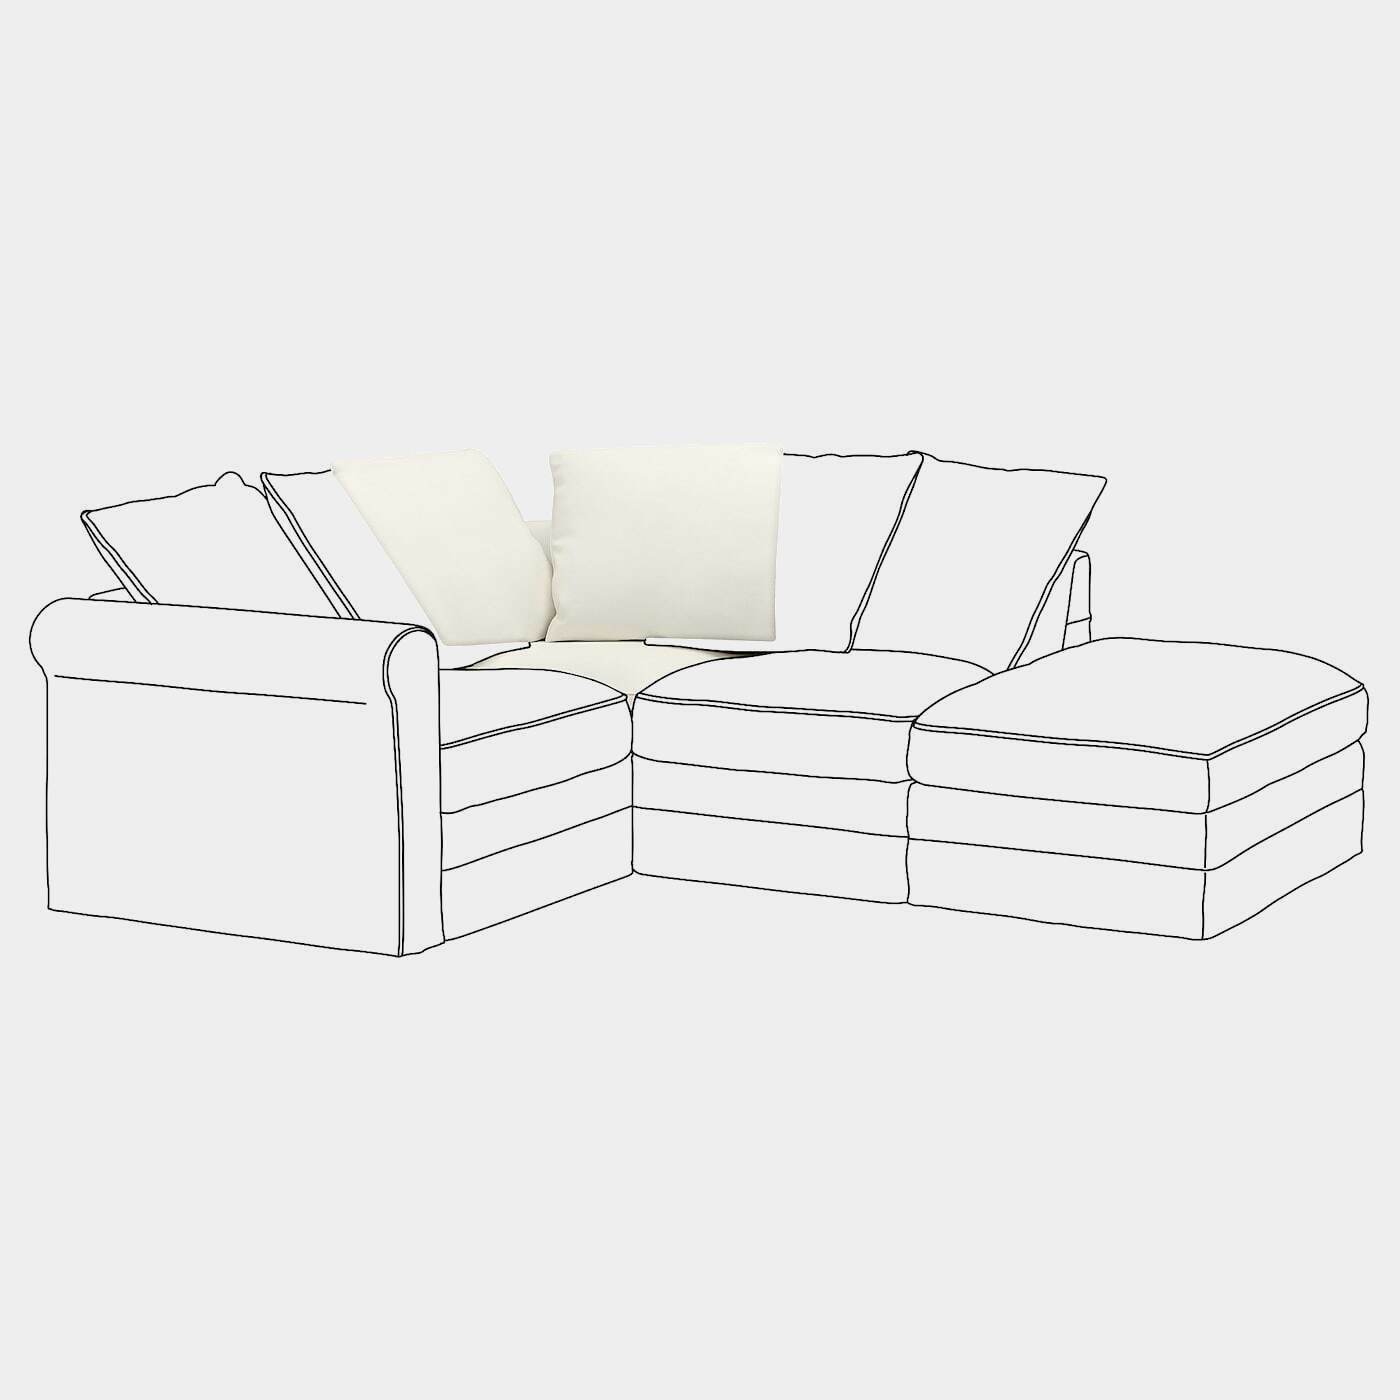 GRÖNLID Eckelementbezug  - extra Bezüge - Möbel Ideen für dein Zuhause von Home Trends. Möbel Trends von Social Media Influencer für dein Skandi Zuhause.